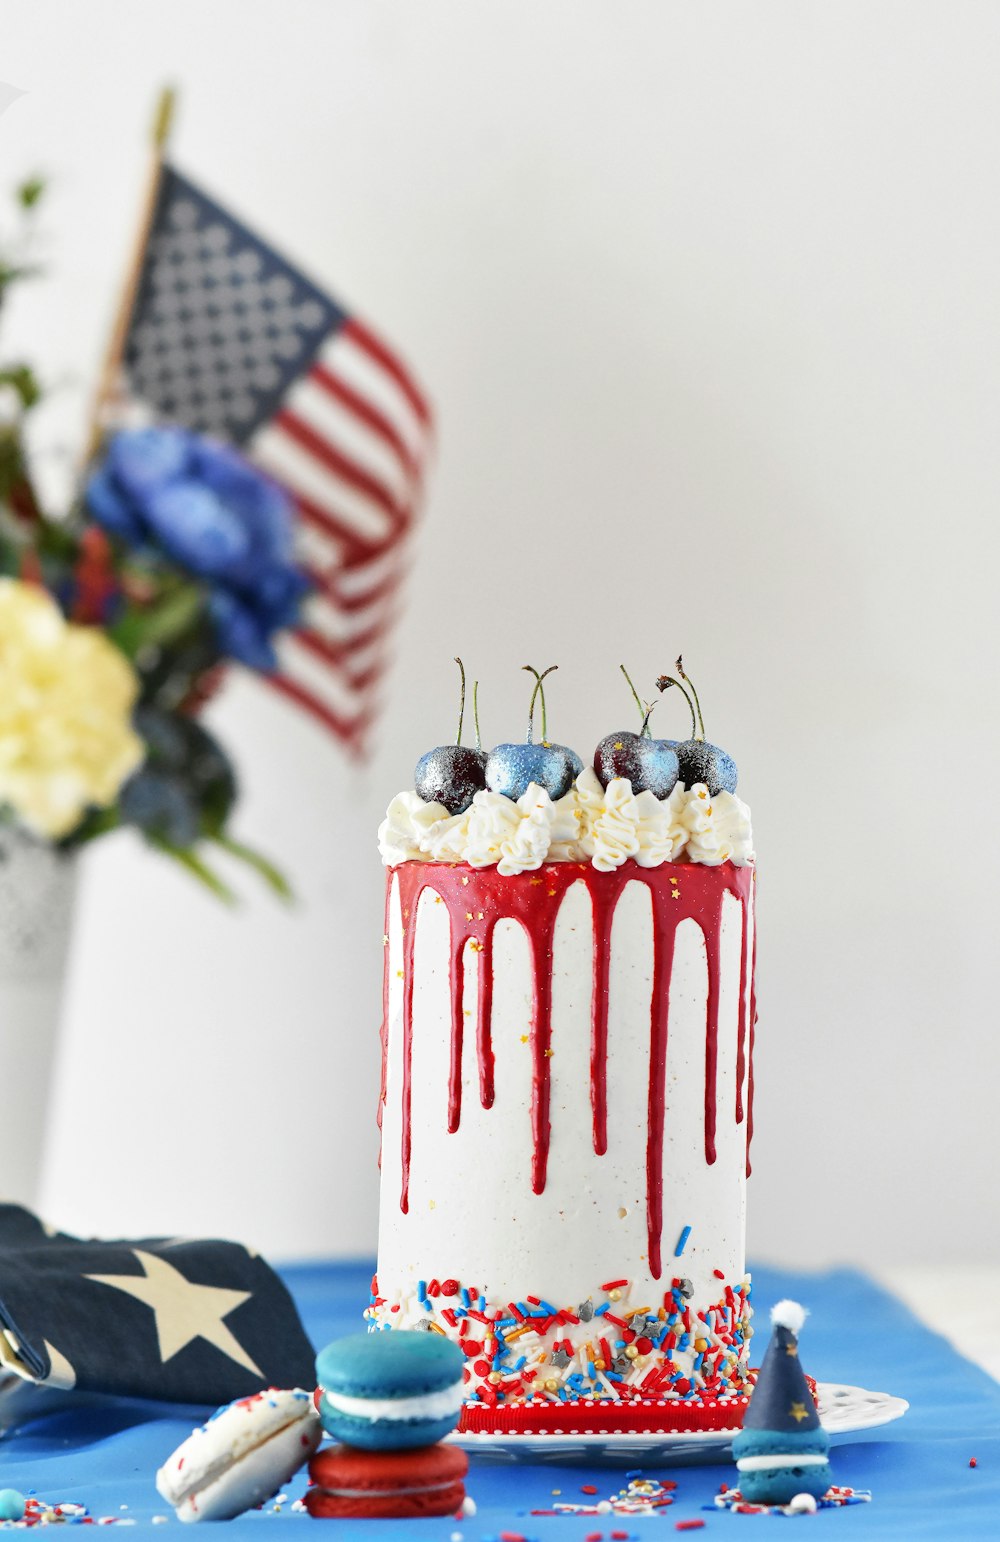 체리와 스프링클을 곁들인 빨간색, 흰색, 파란색 케이크